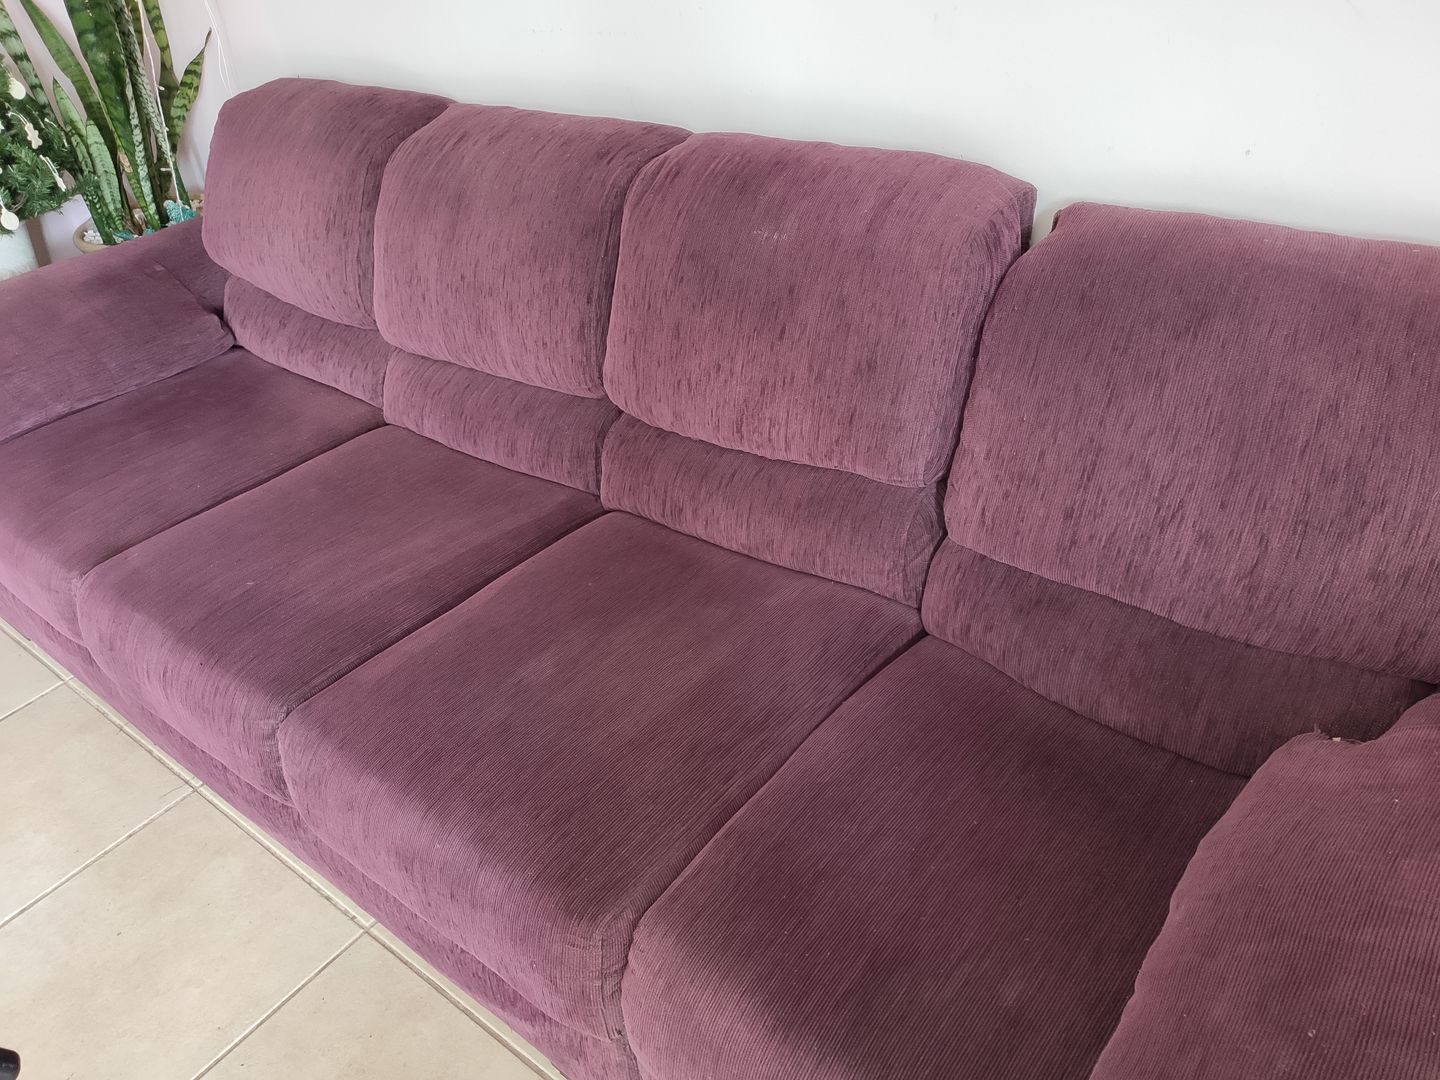 Cómo limpiar la tapicería del sofá - 8 pasos